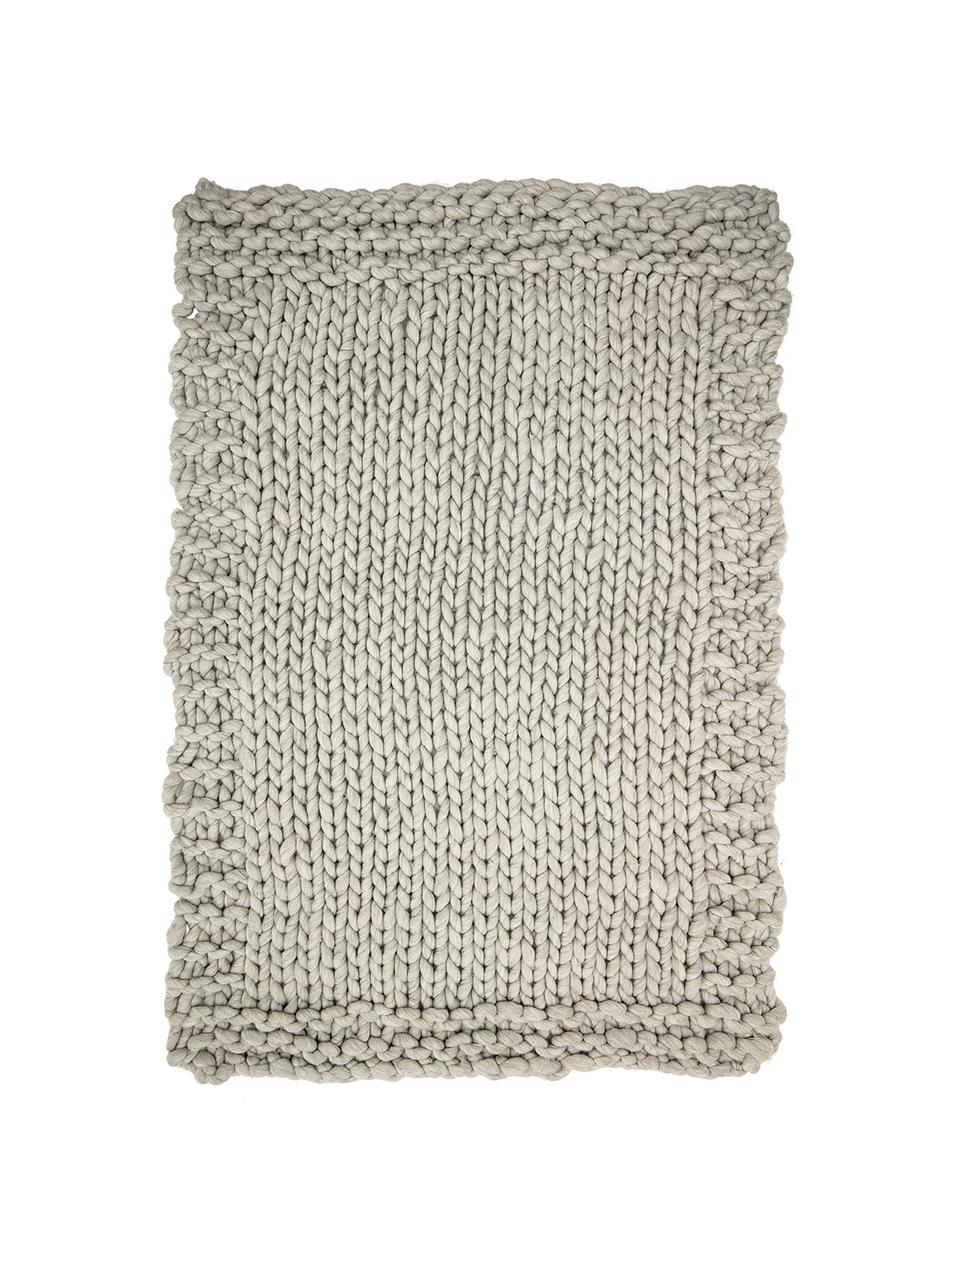 Manta pequeña de punto de lana Fern, 60% lana, 40% acrílico, Gris, An 120 x L 150 cm